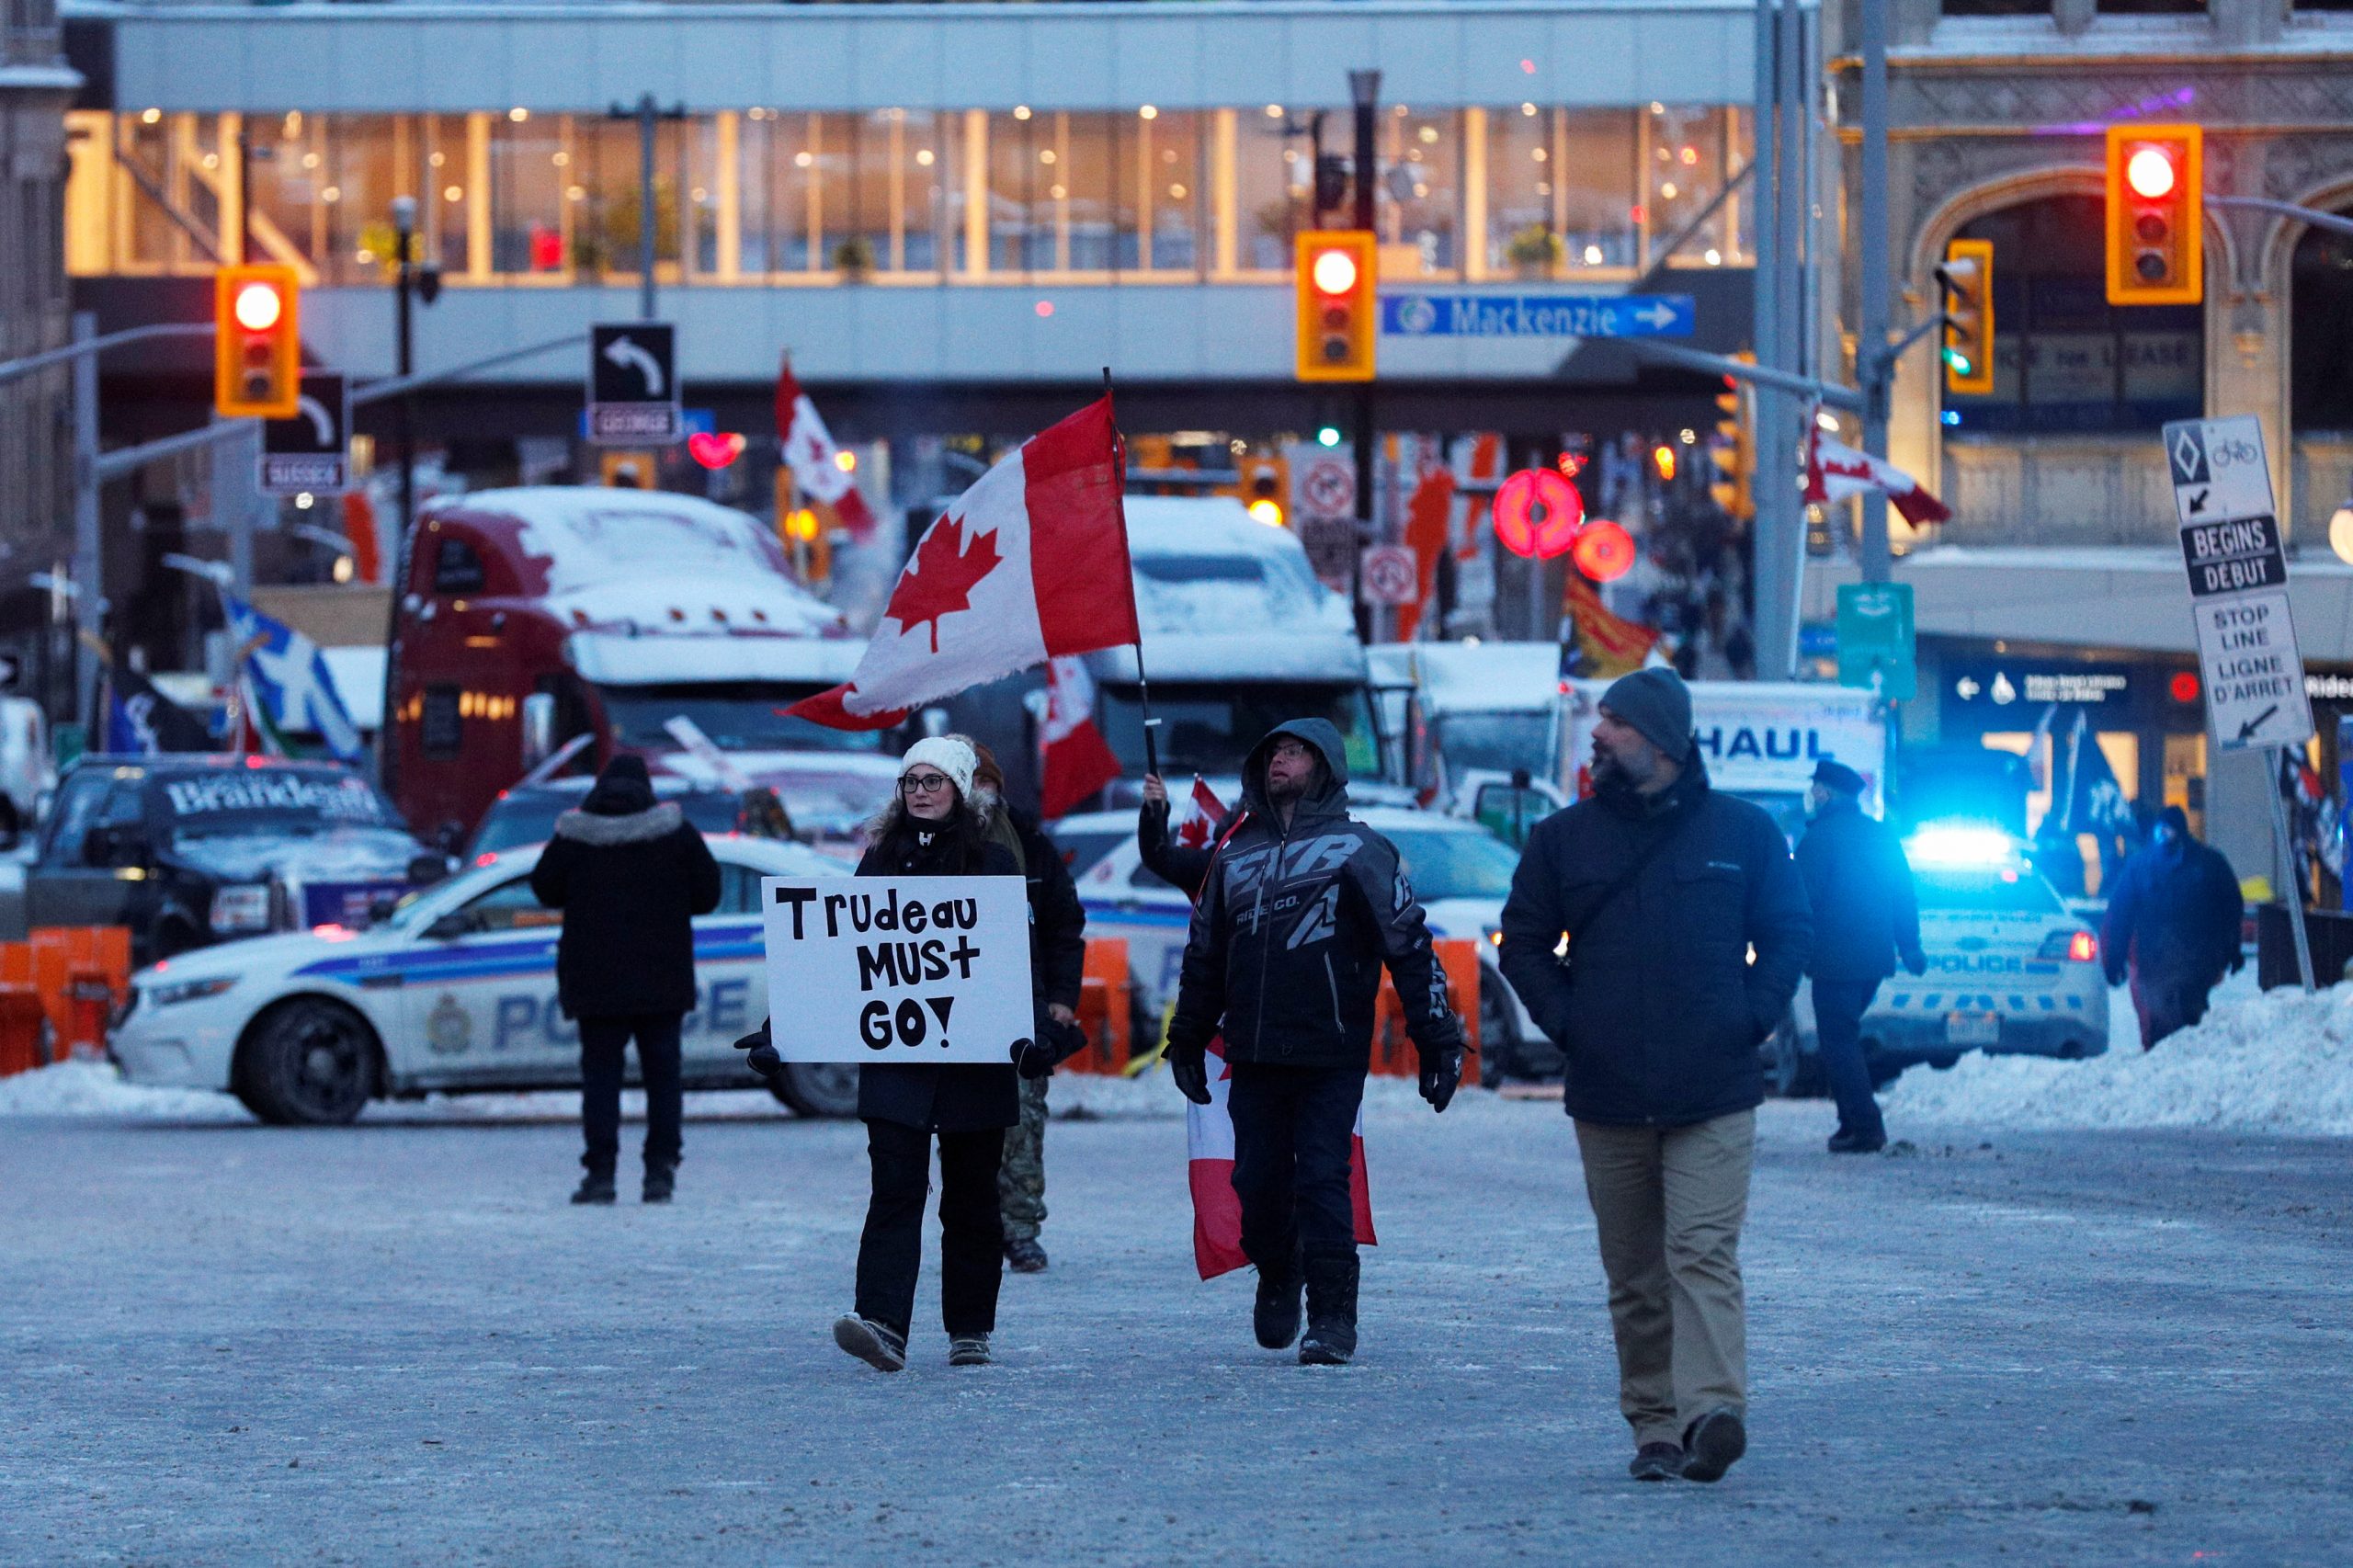 Kanada, Otava, kamiondžije, protest